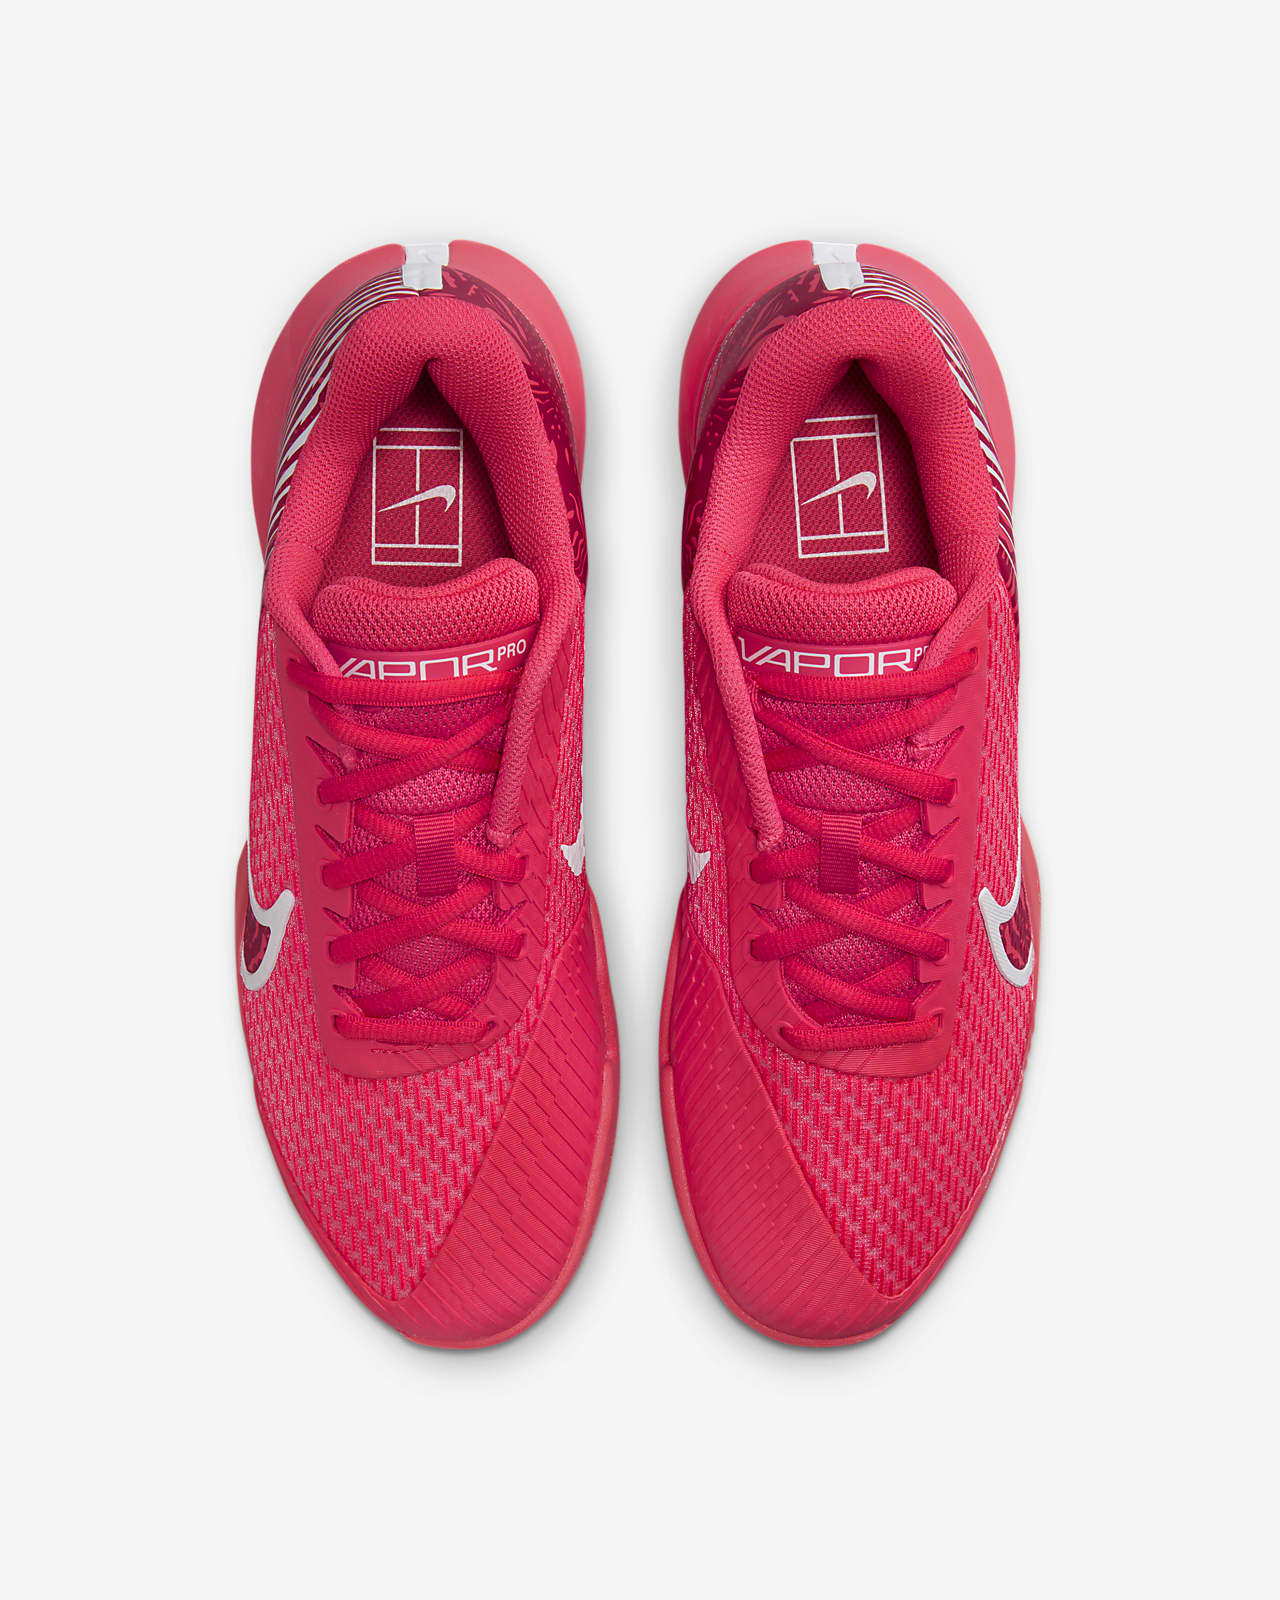 Air Zoom Vapor Pro 2 Men's Hard Court Tennis Shoes. Nike.com